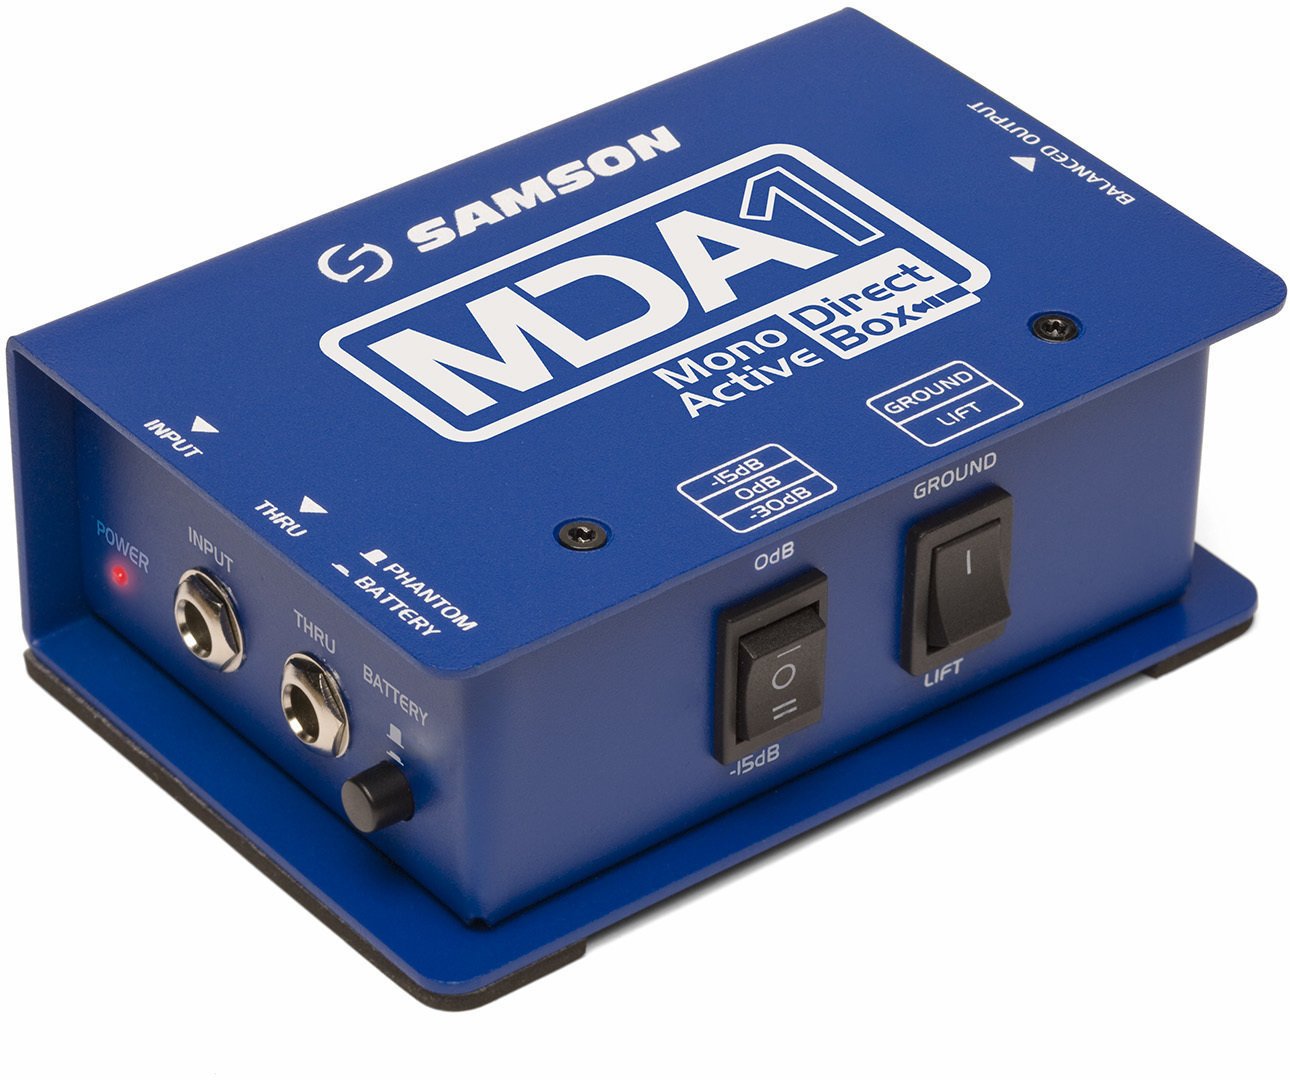 Procesor de sunet Samson MDA1